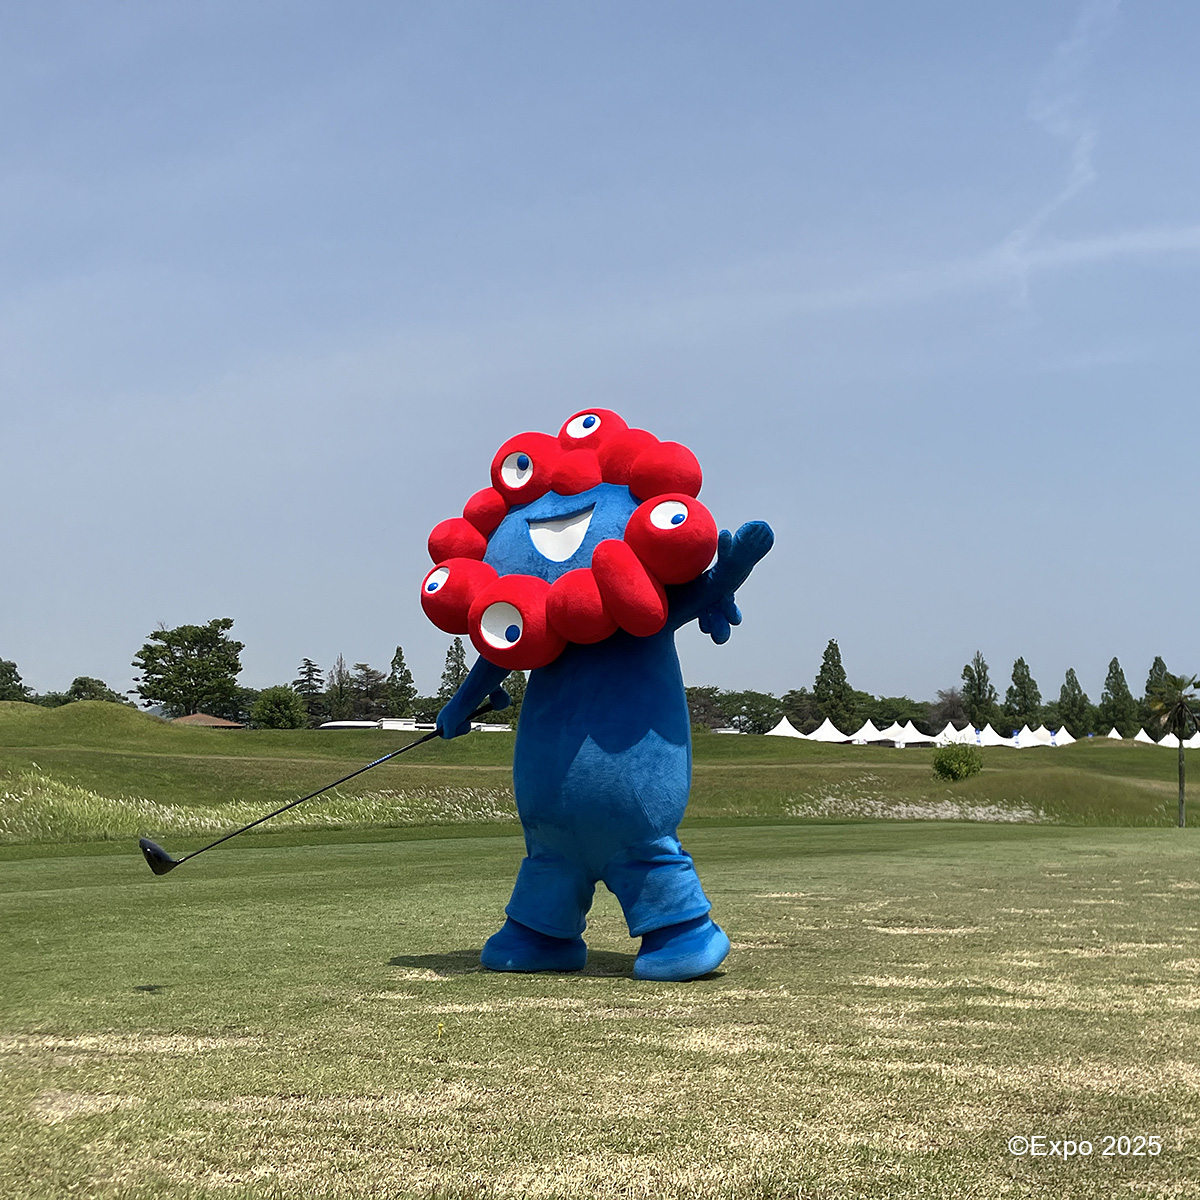 (ミズノオープン おまけ画像)
\ミャクミャクがゴルフに挑戦！/
大阪・関西万博 公式キャラクターのミャクミャクが、～全英への道～ミズノオープン会場でゴルフに挑戦していました✨
ミャクミャクの華麗なスイングで、ギャラリーの皆様の視線を集めていました👀